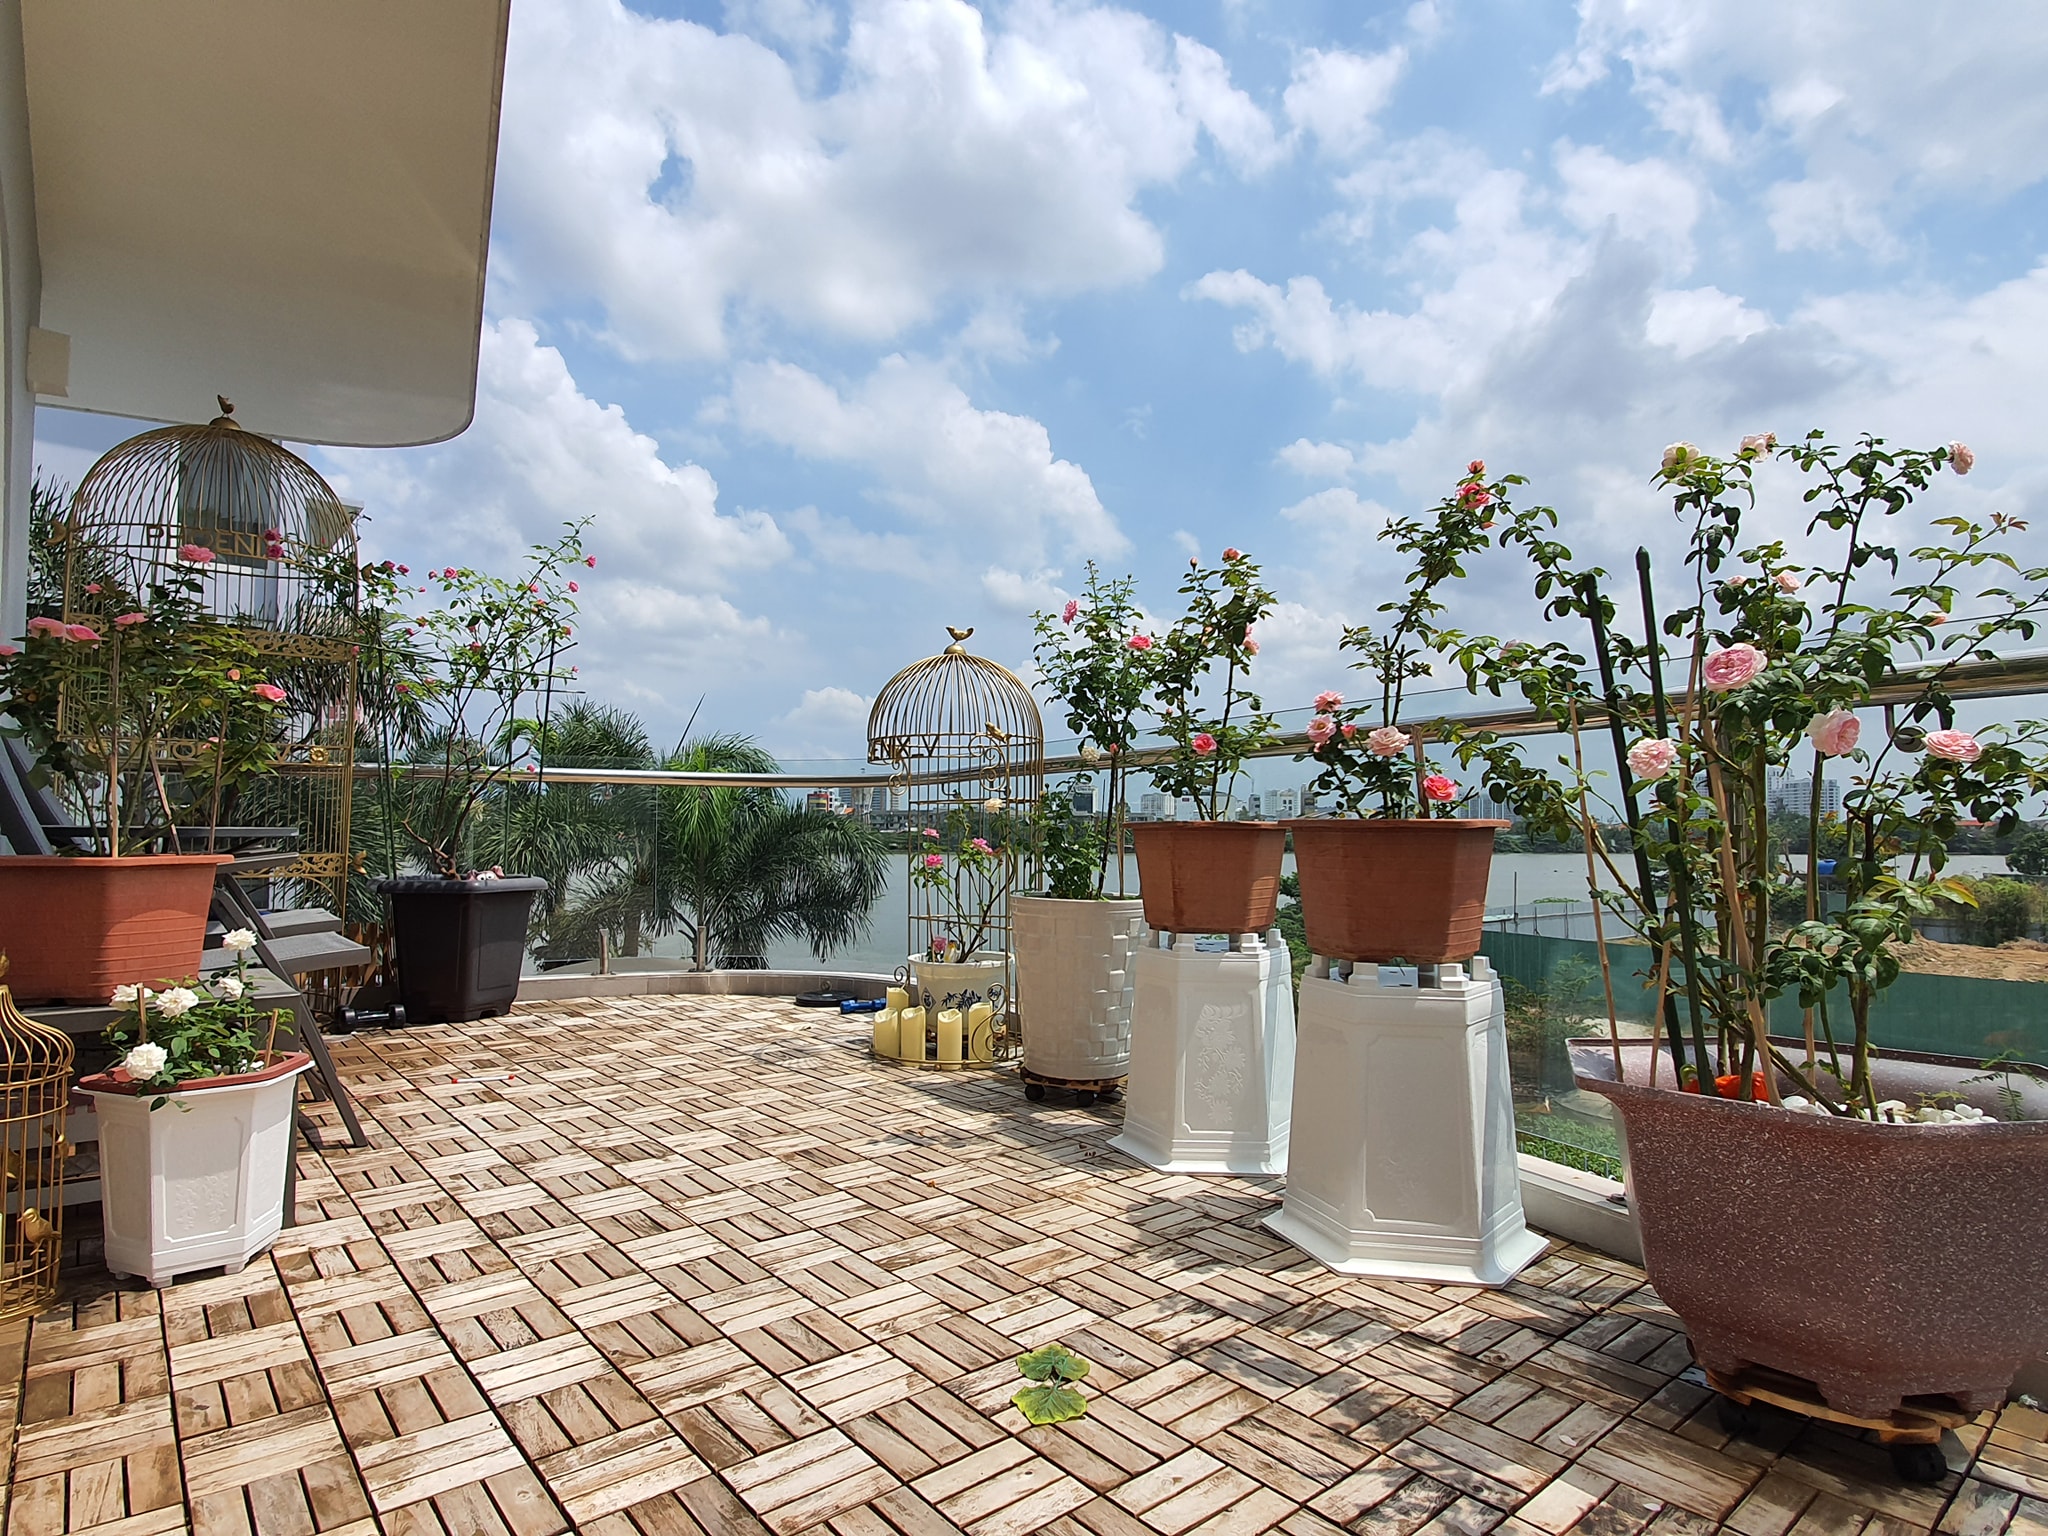 Vườn hồng khoe sắc ngọt ngào trên sân thượng của biệt thự xây trên mảnh đất 1300m² ở Quận 2, Sài Gòn - Ảnh 1.